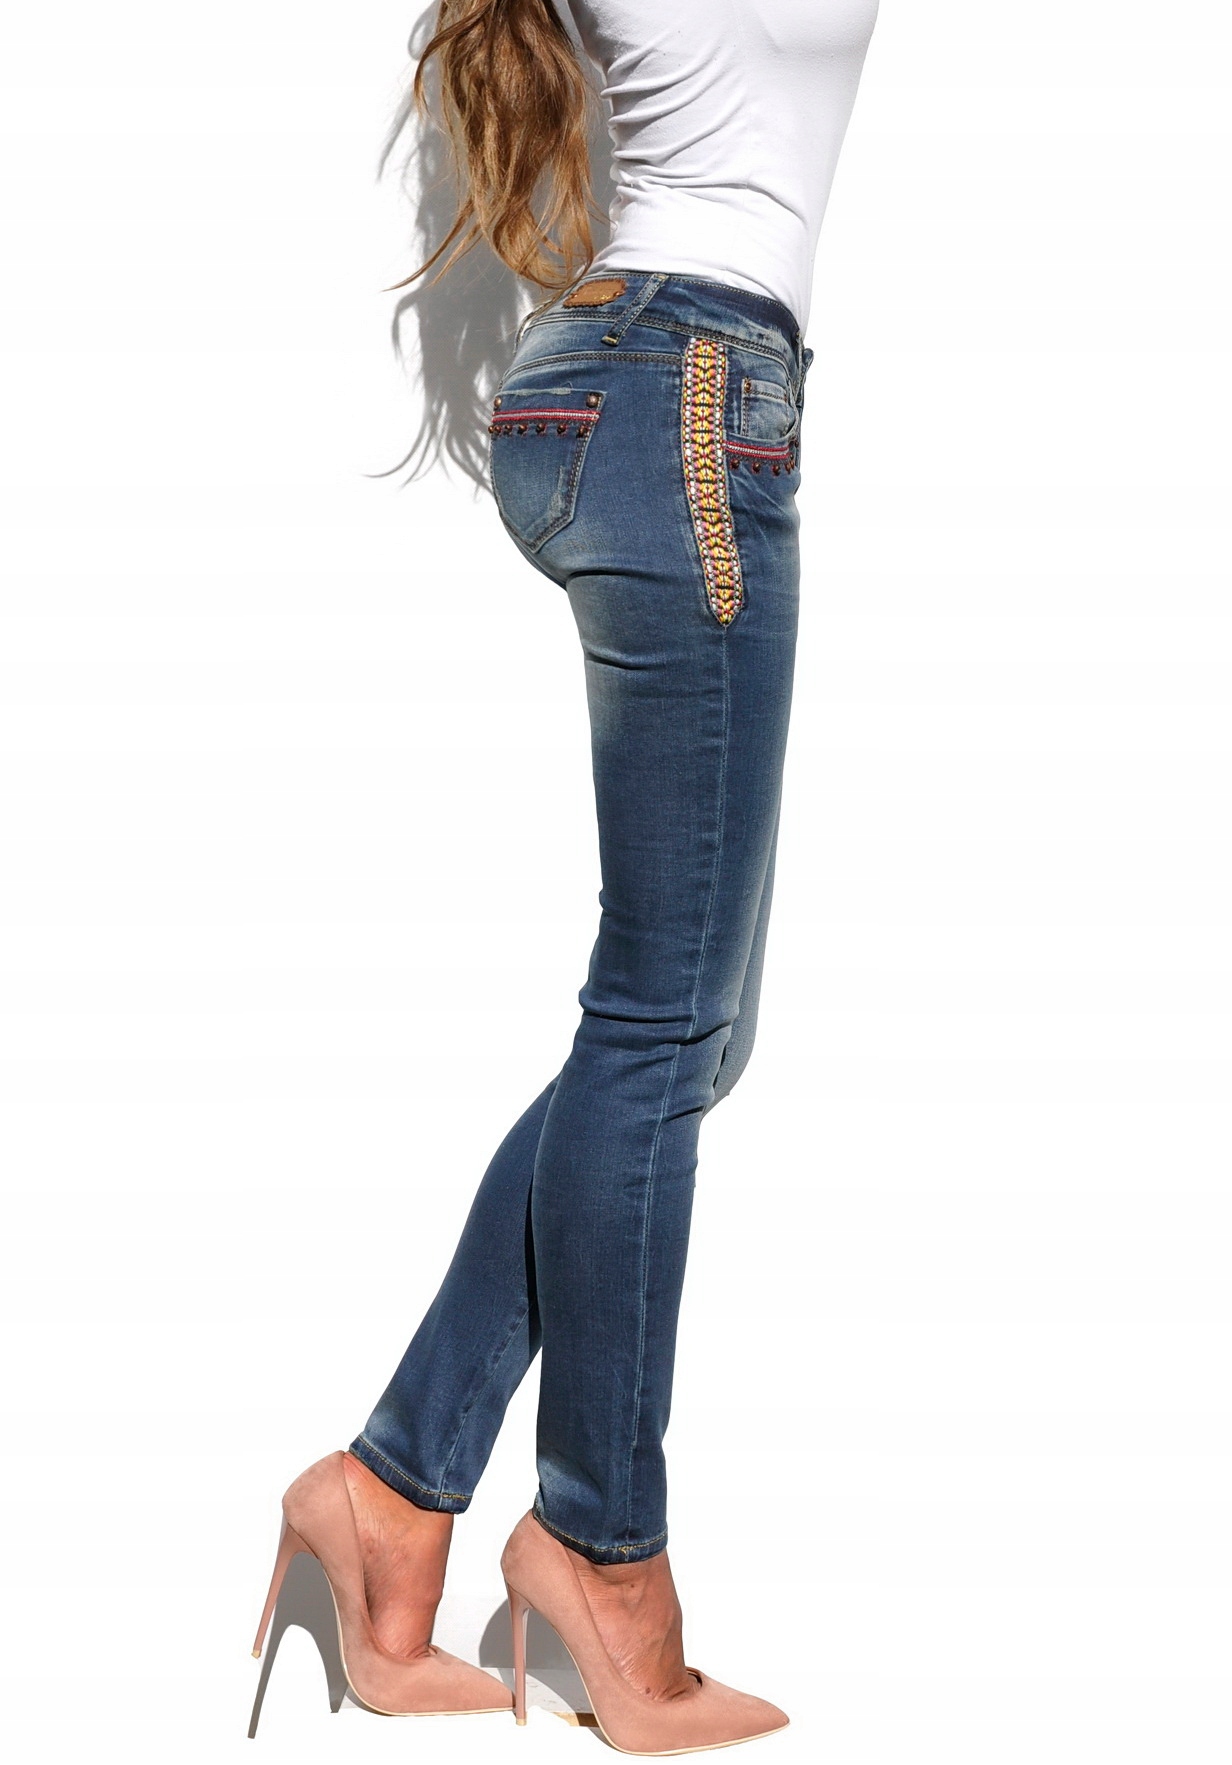 джинсы с лампасами женские фото